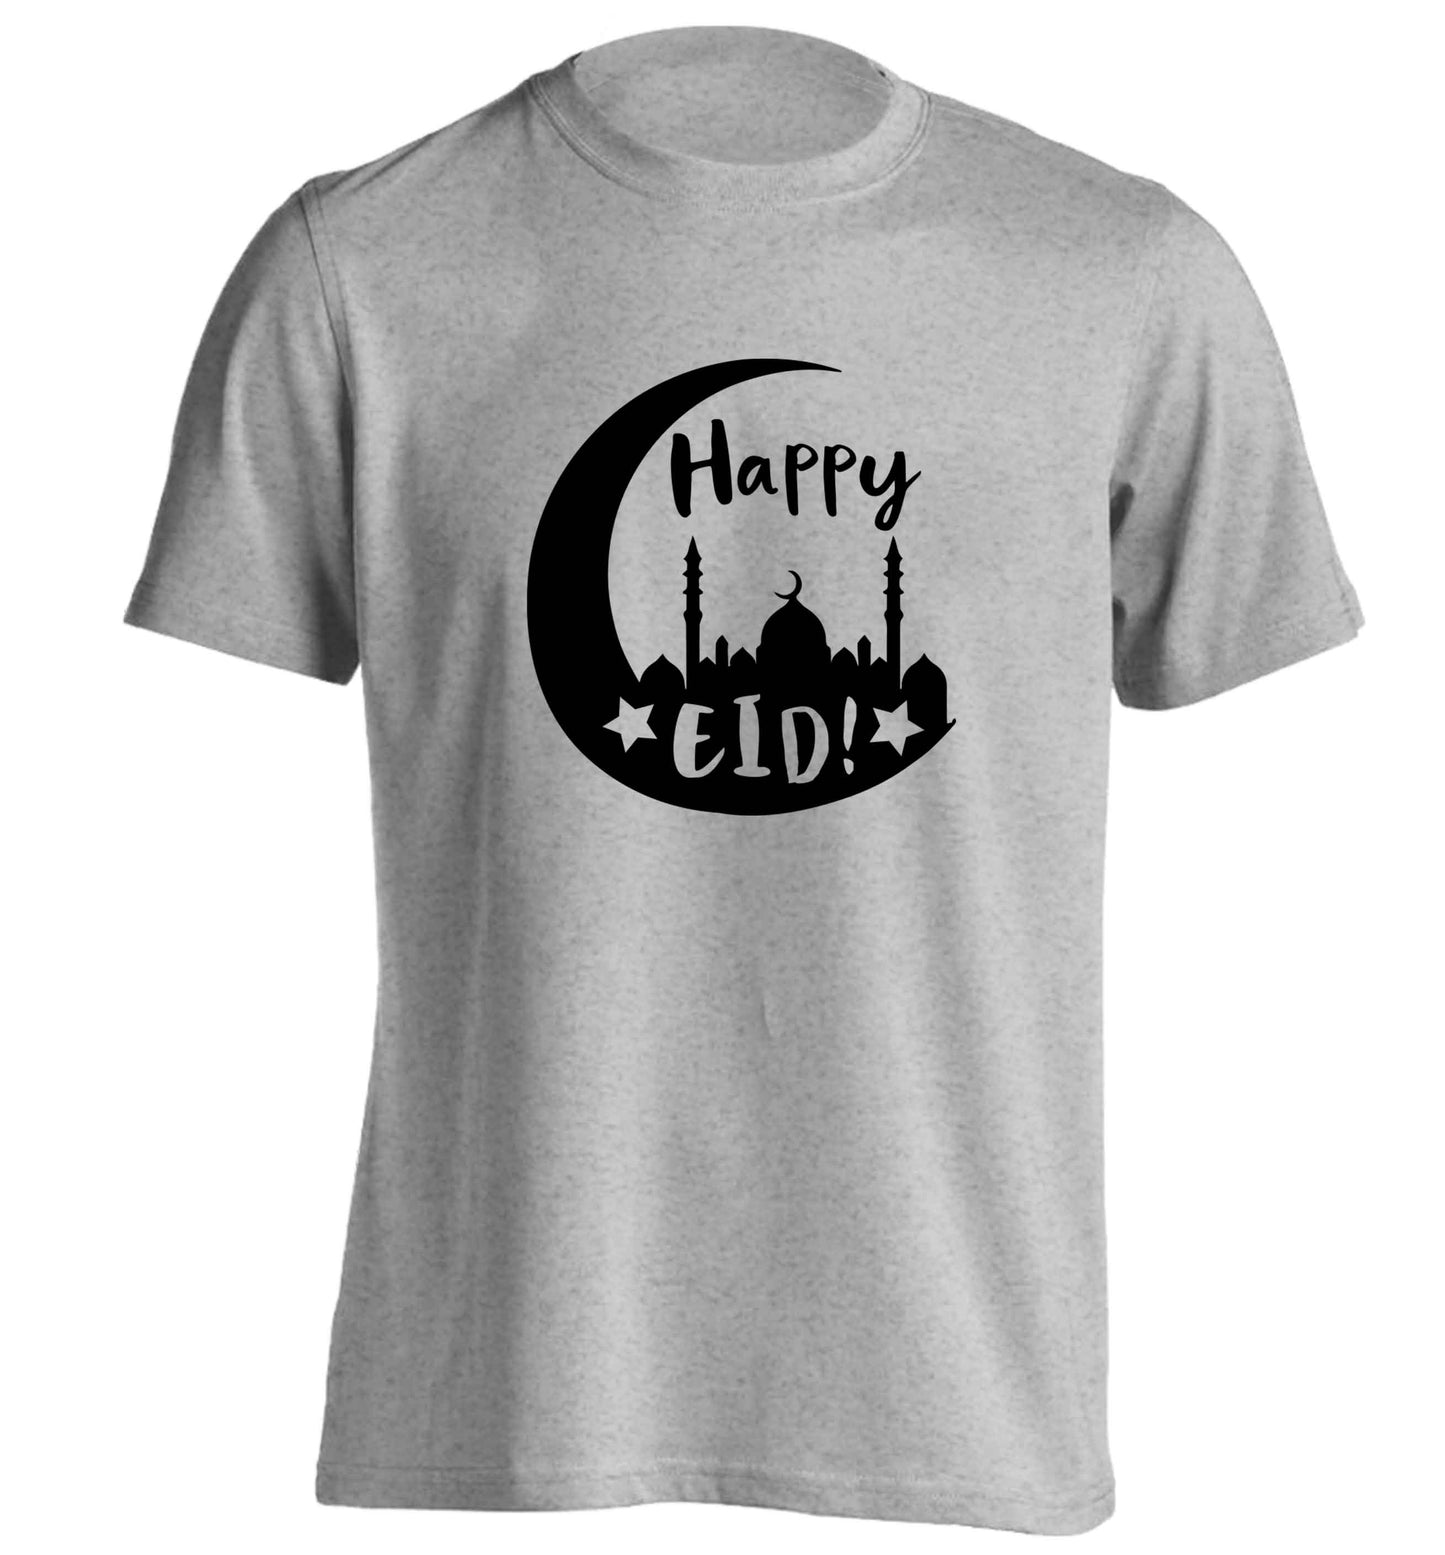 Happy Eid adults unisex grey Tshirt 2XL